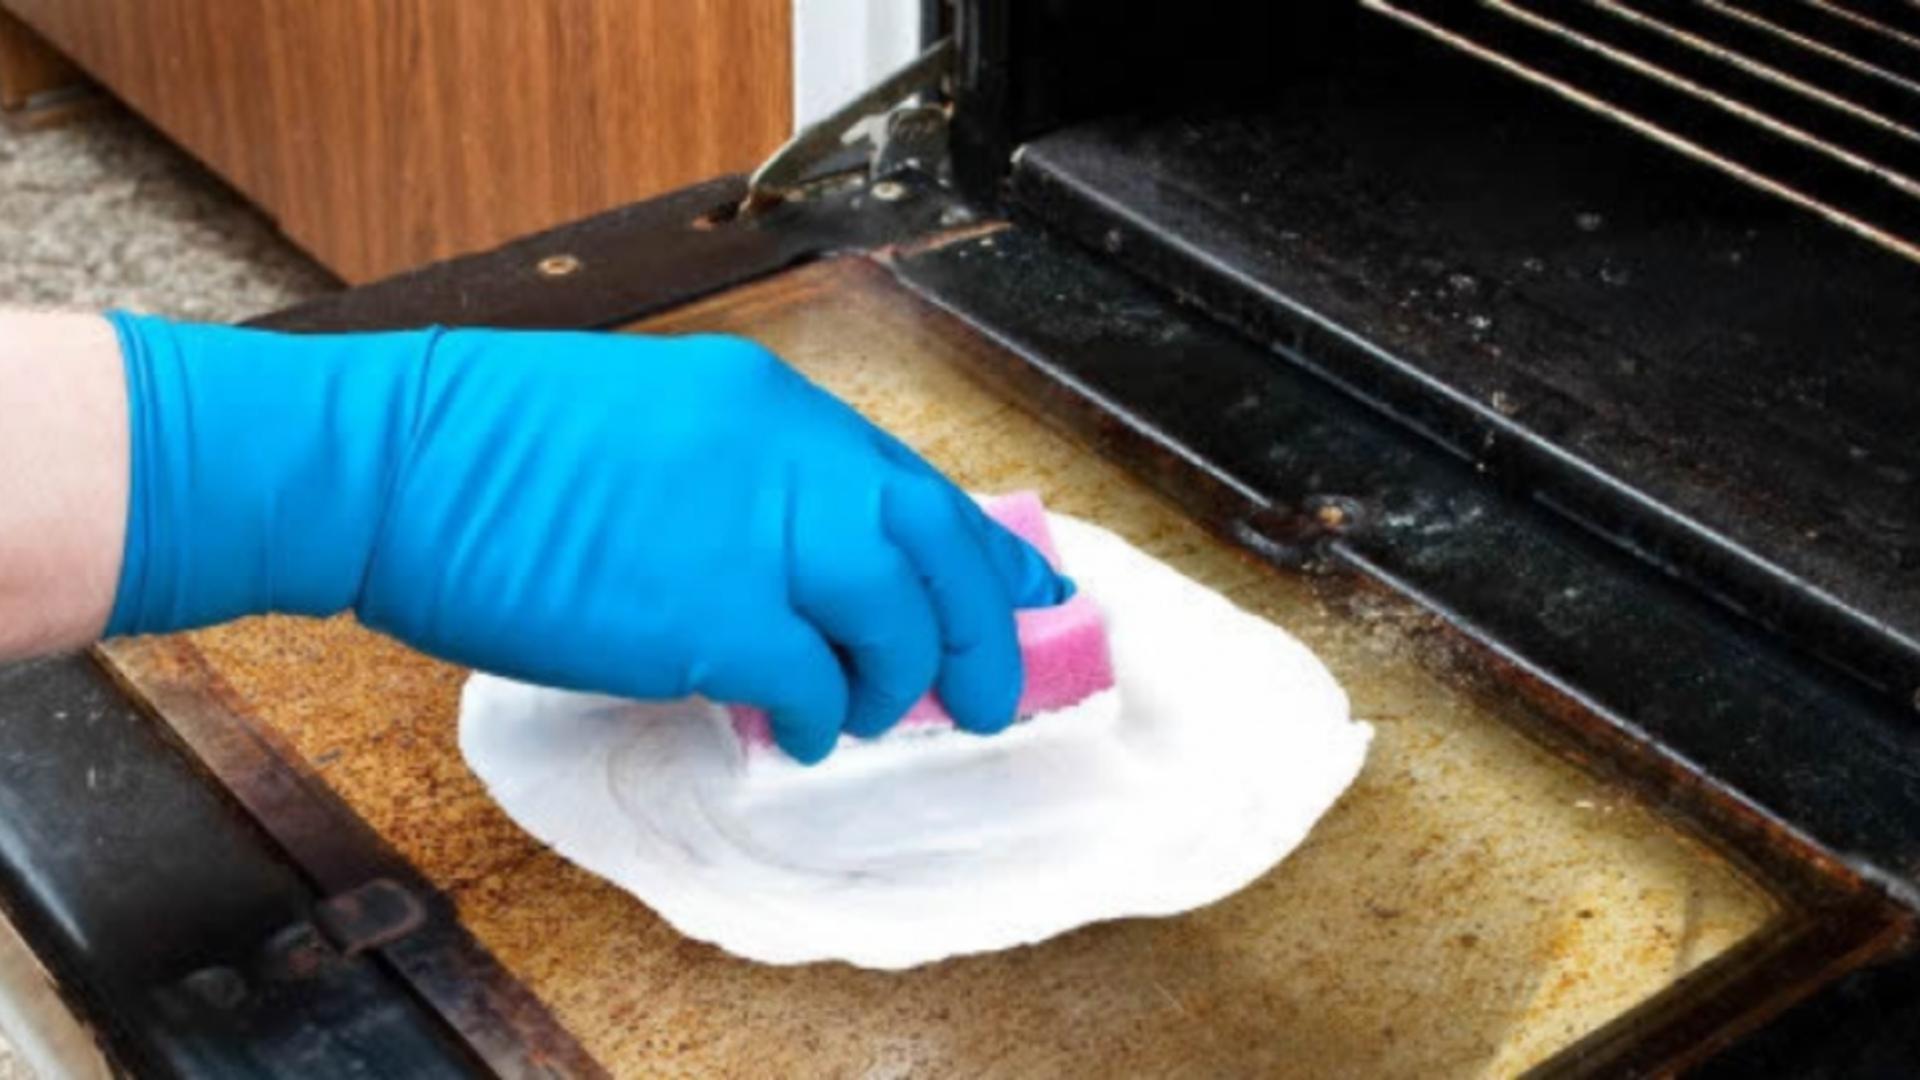 Cum cureți rapid geamul de la cuptor cu aceste două ingrediente simple din bucătărie